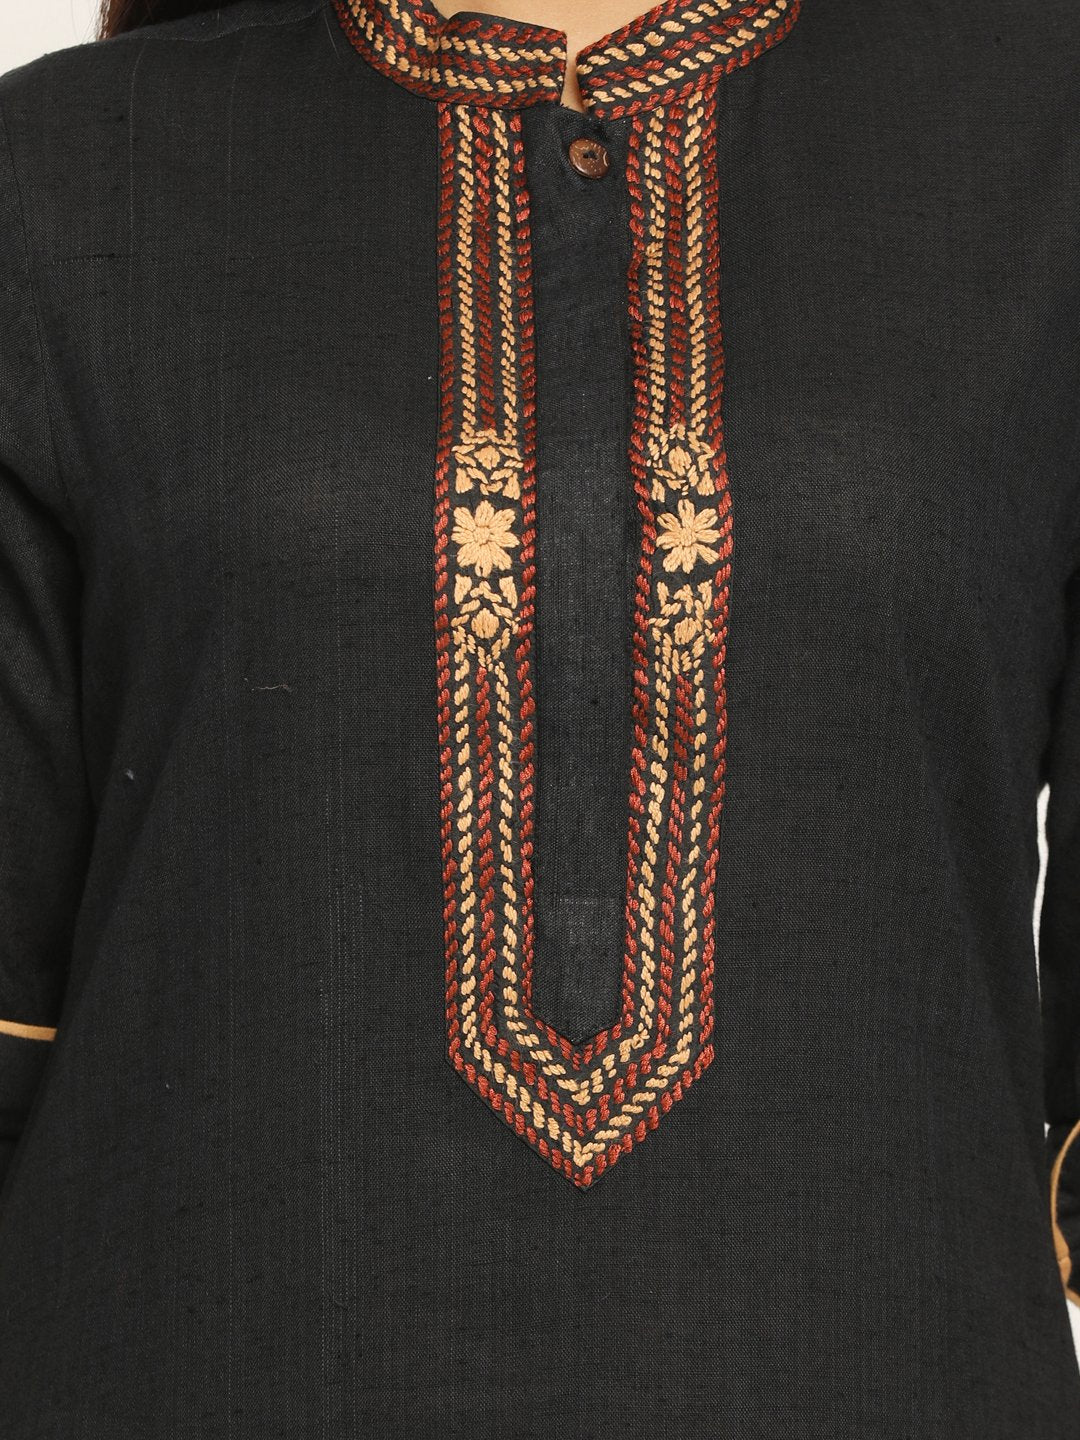 Nakshi Embroidered Assymetrical Black Kurti